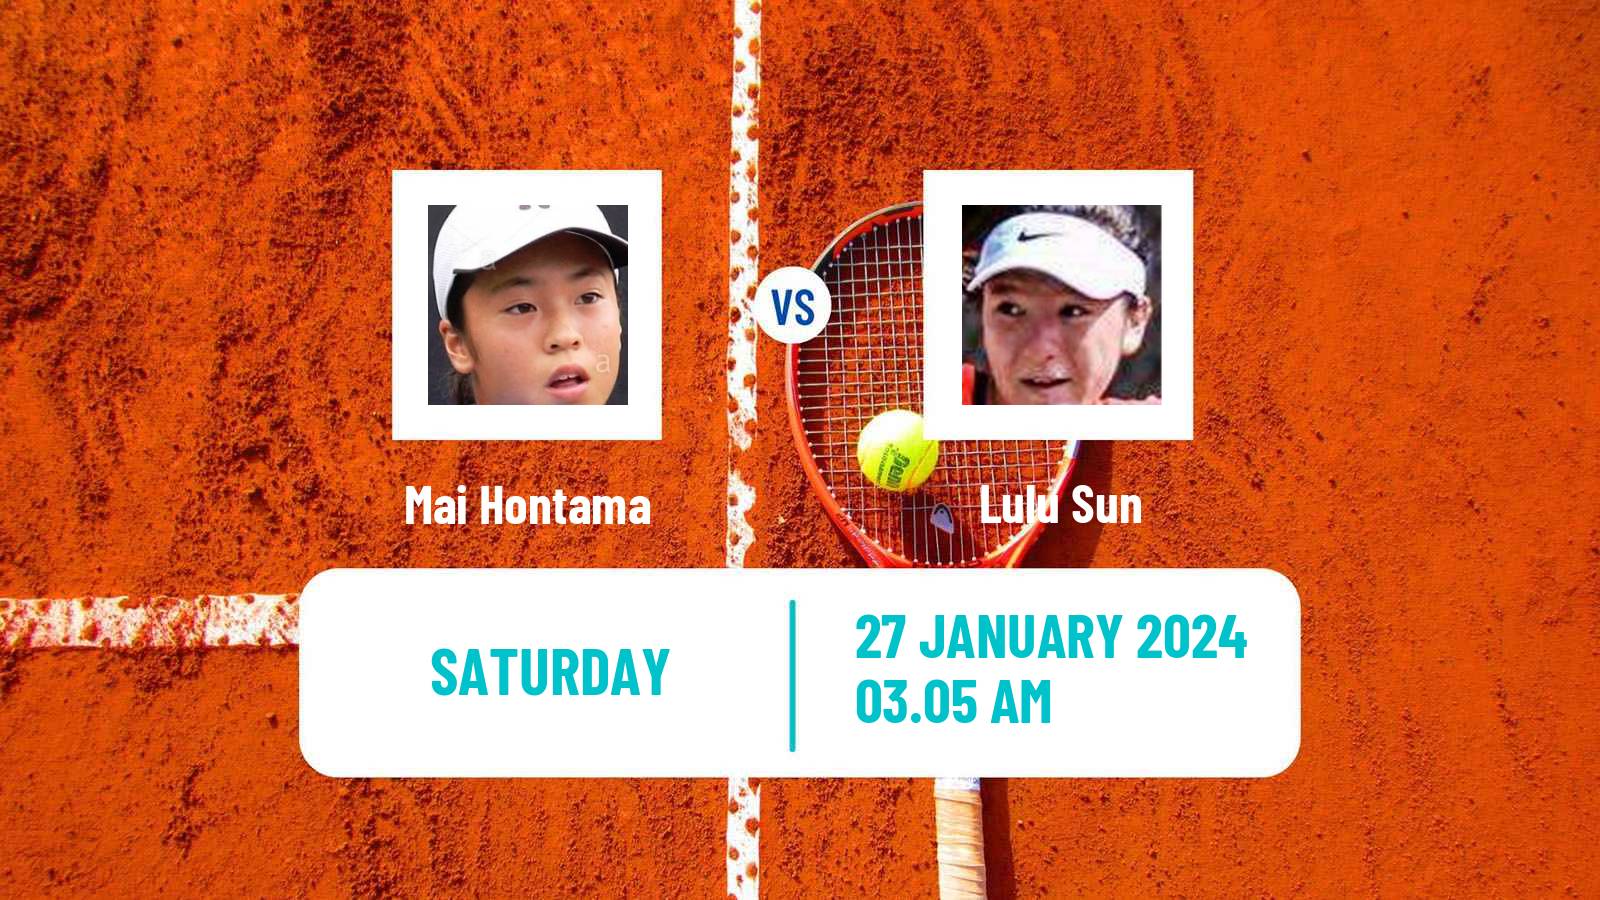 Tennis WTA Hua Hin Mai Hontama - Lulu Sun